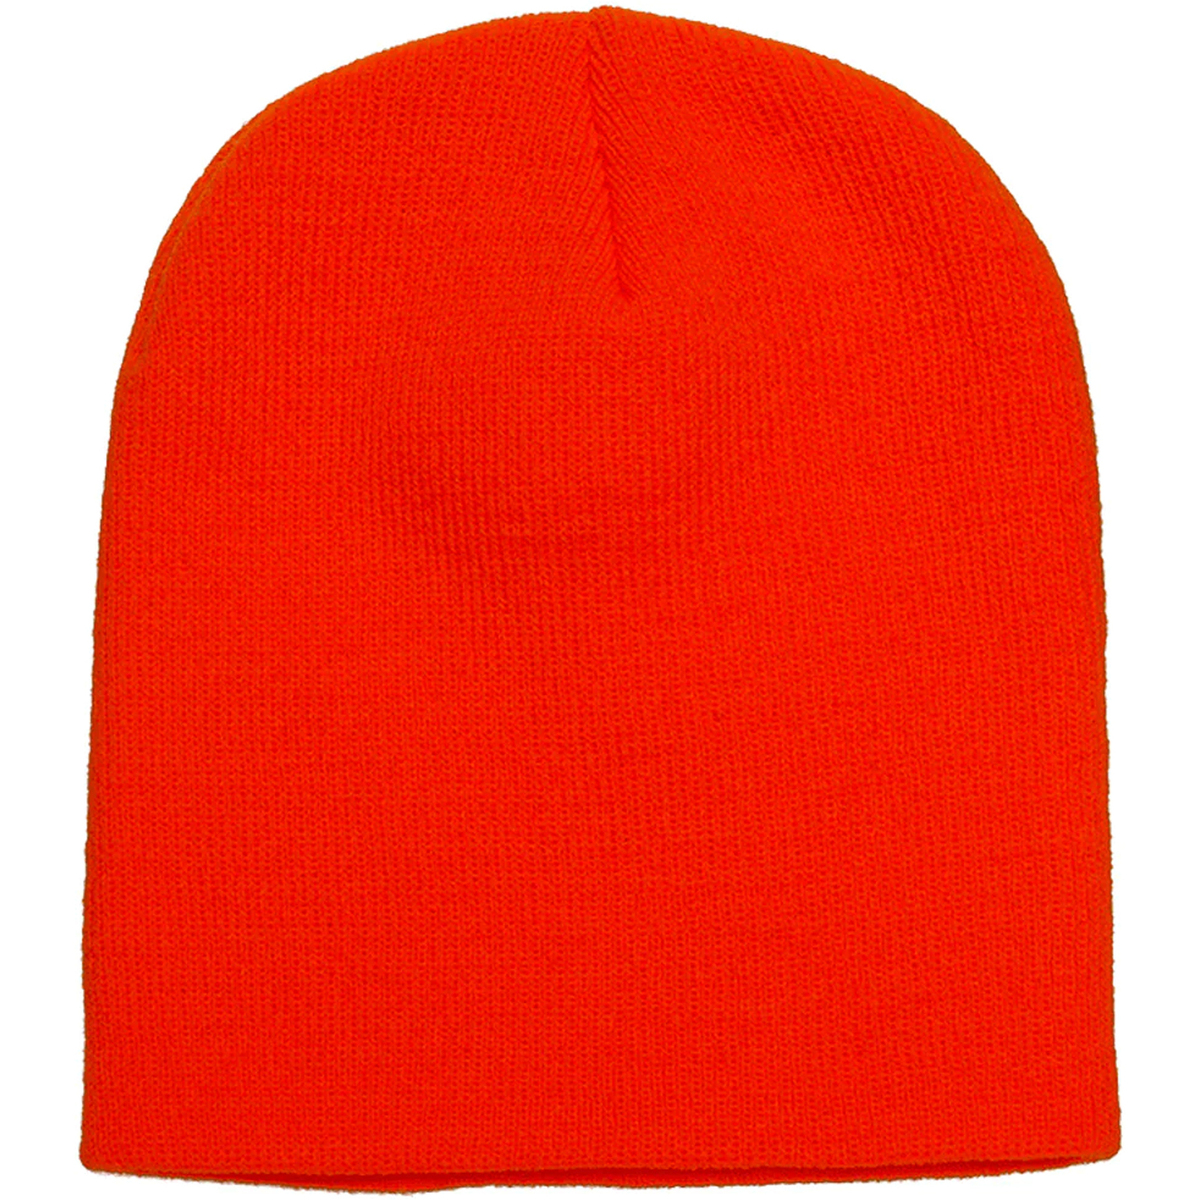 Accessori Cappelli Yupoong Flexfit Arancio